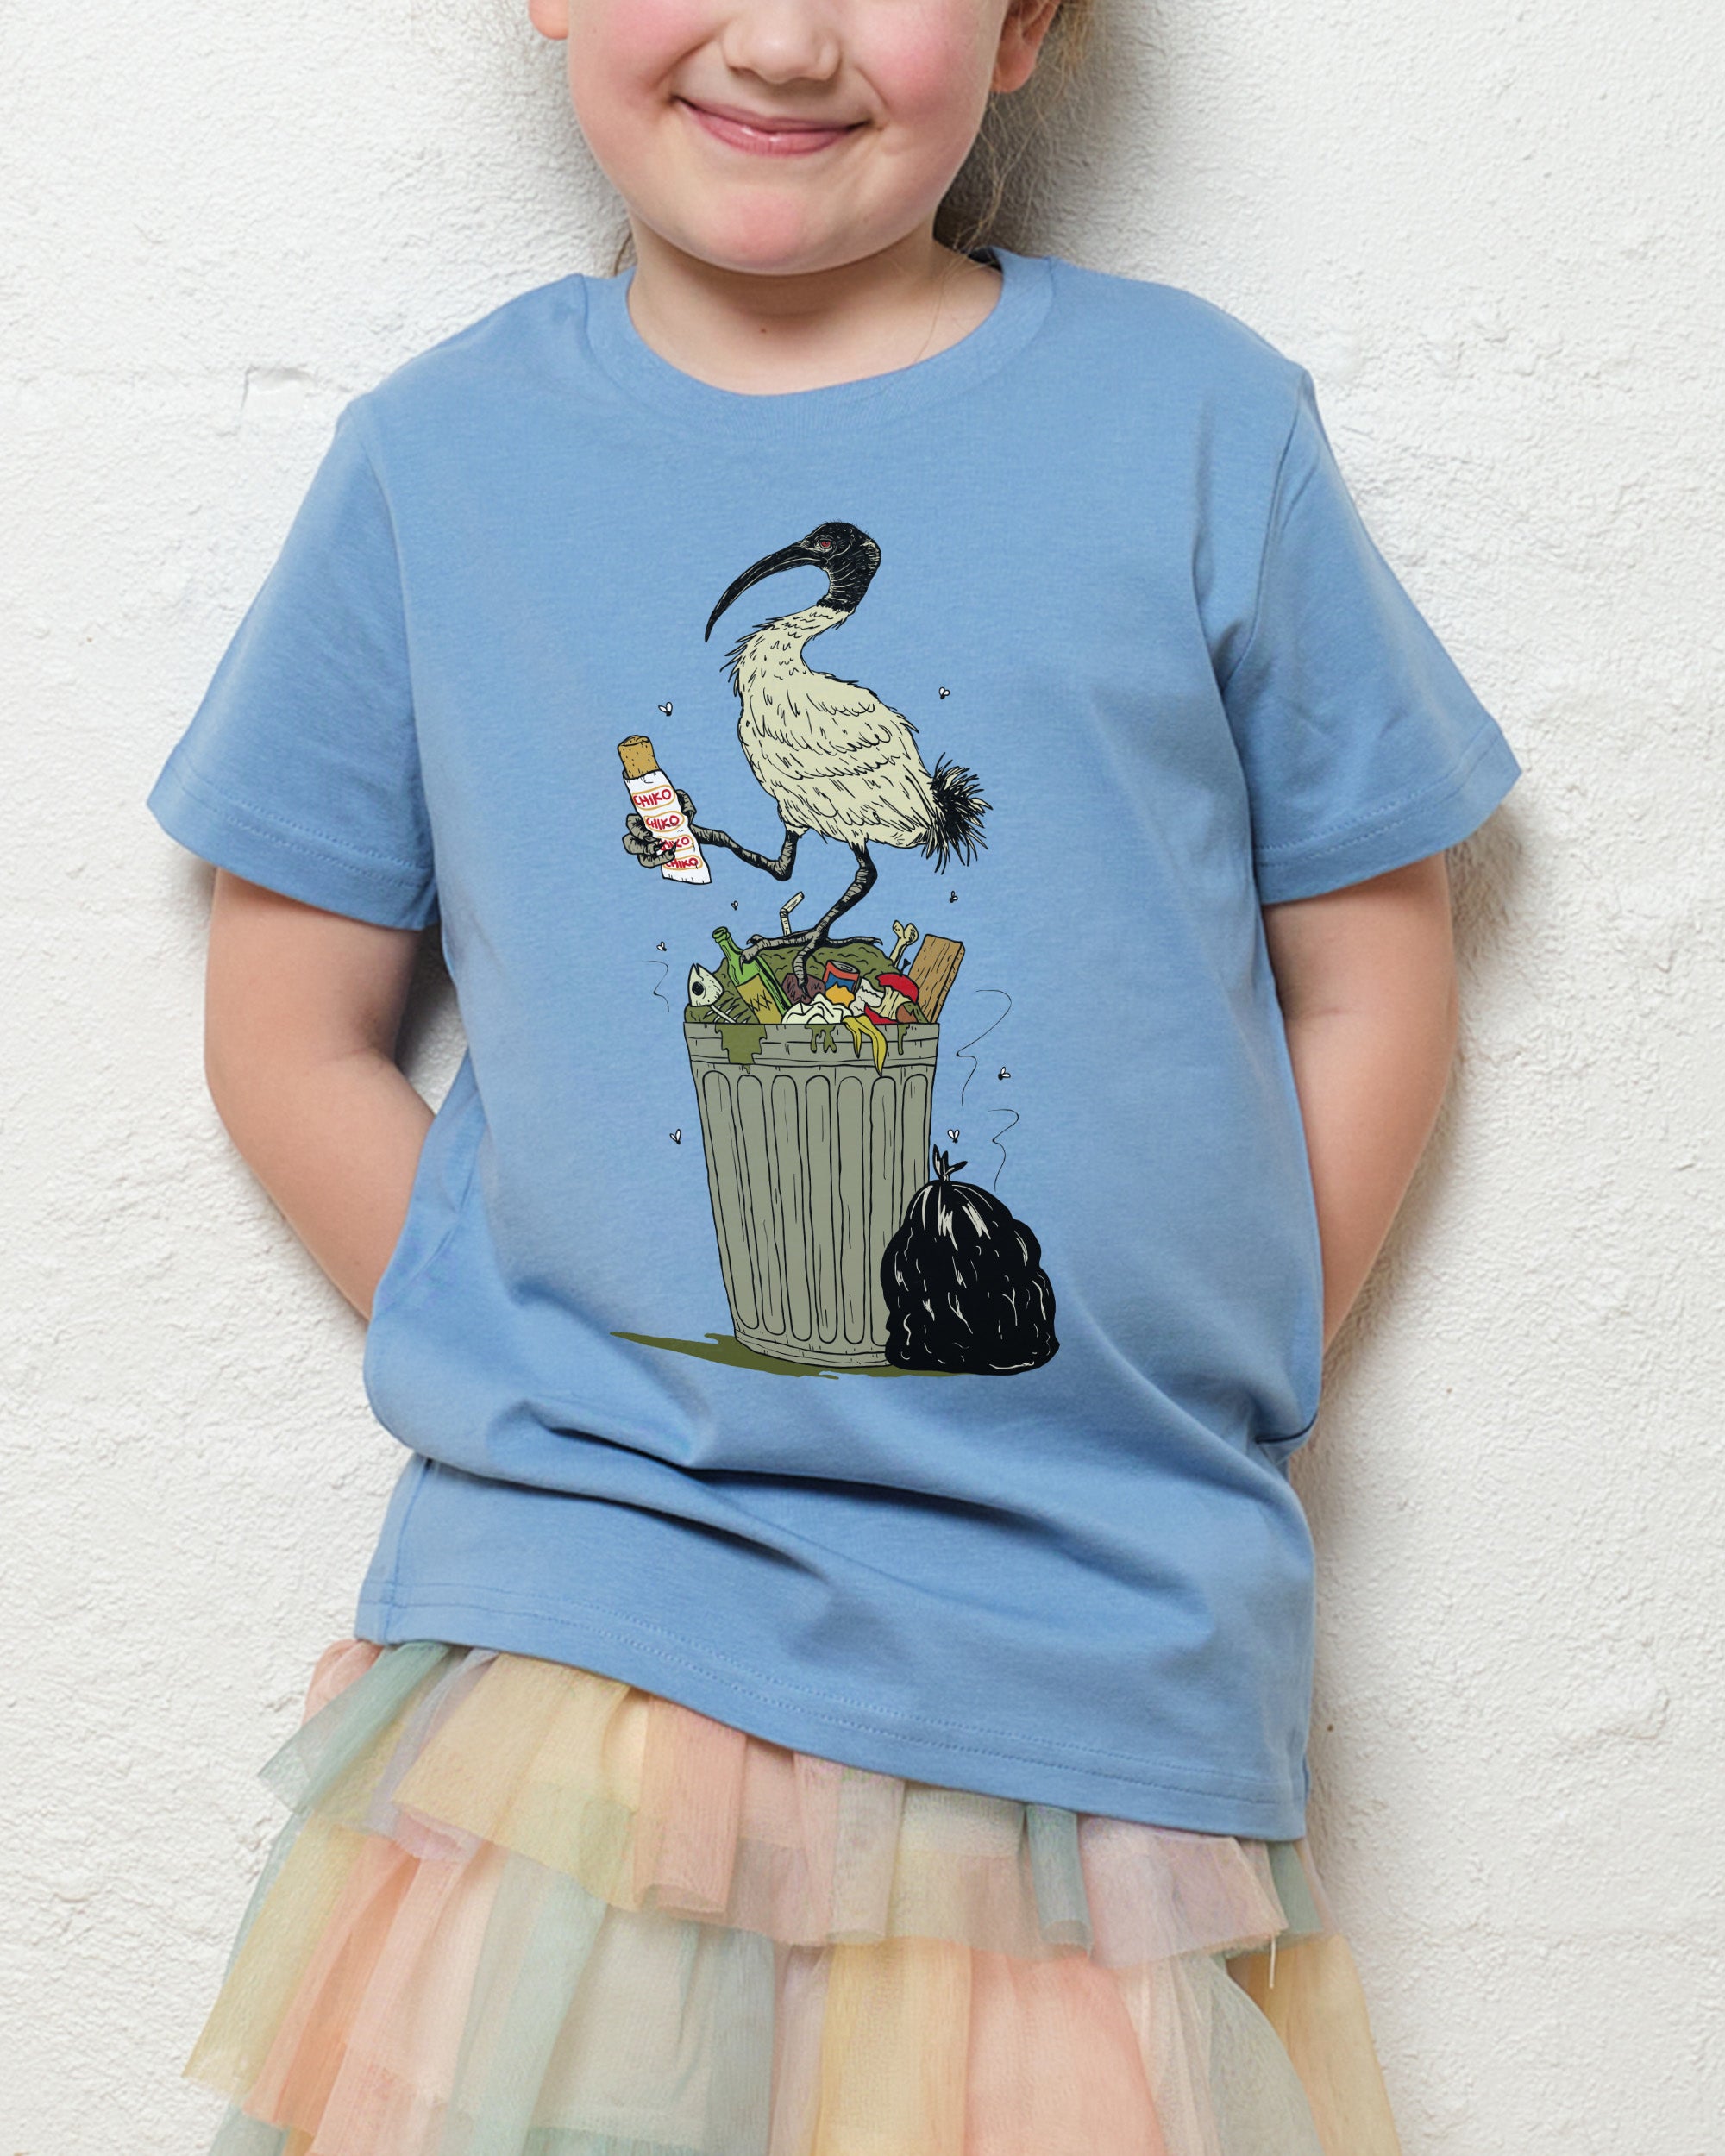 Bin Chicken Kids T-Shirt Australia Online